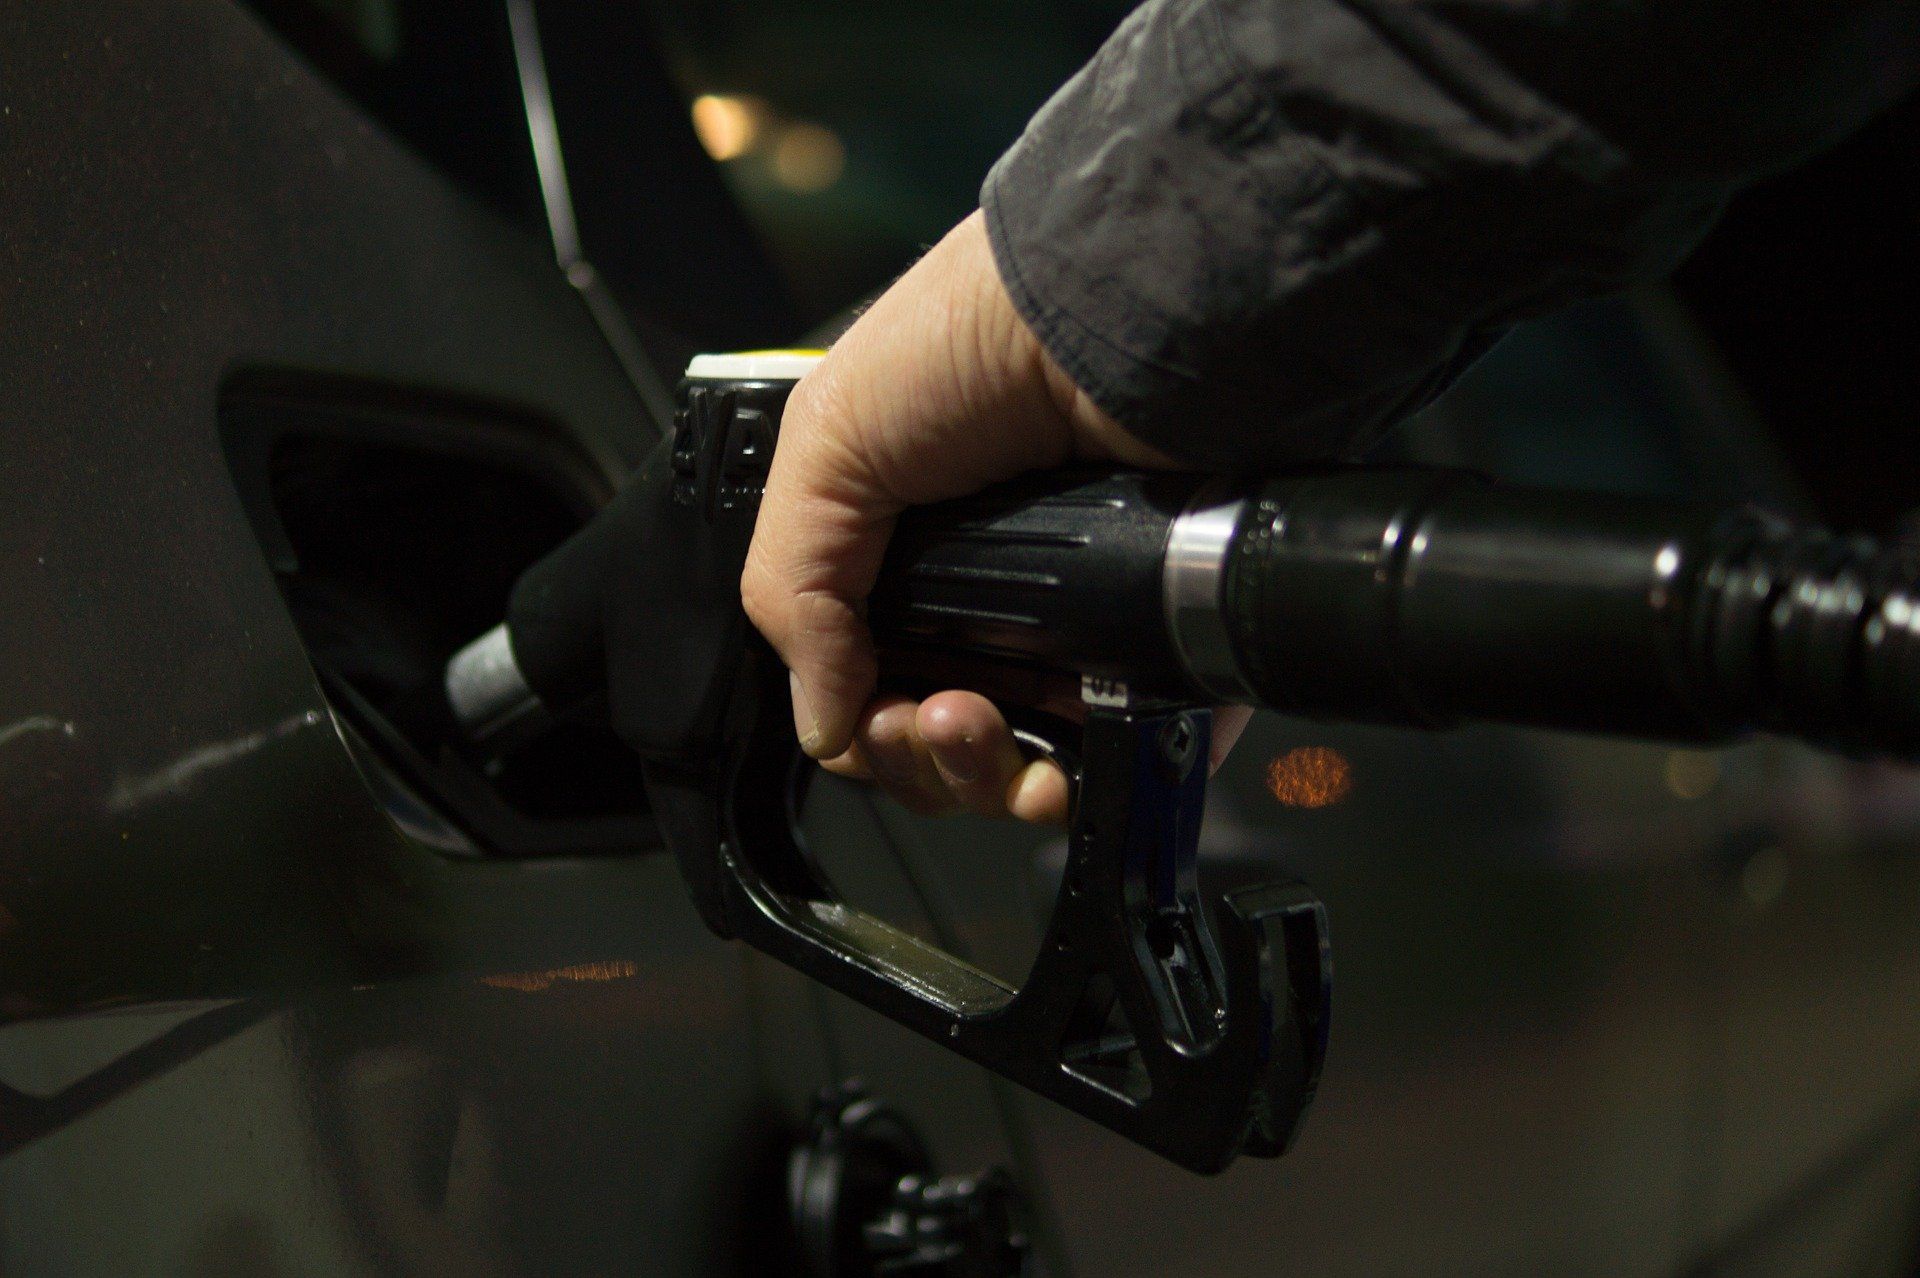 Fuel price July 22, 2022: Petrol Rs 106.31, diesel Rs 94.27 in Mumbai